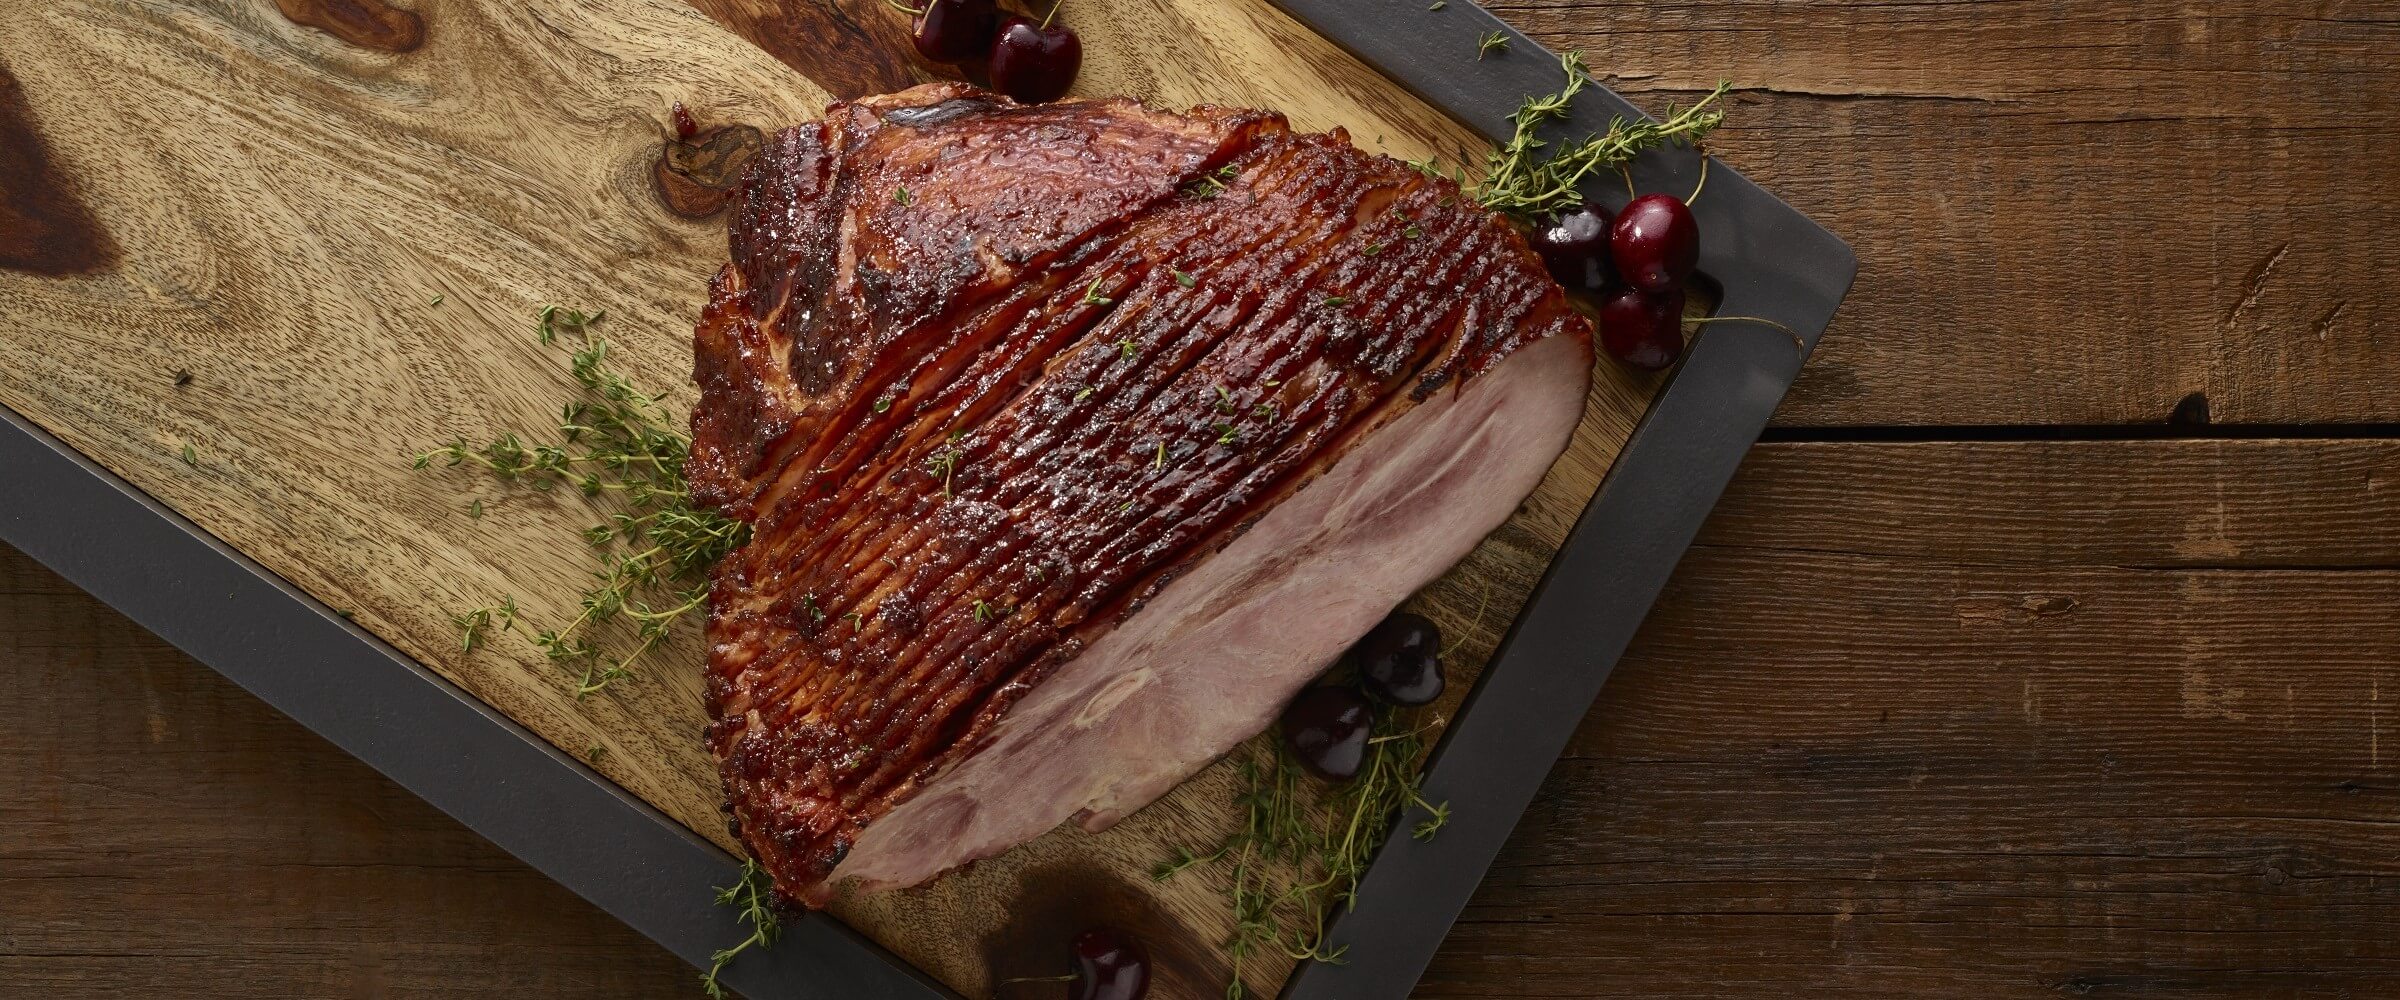 Cure 81 brown sugar cherry glaze ham on wood cutting board